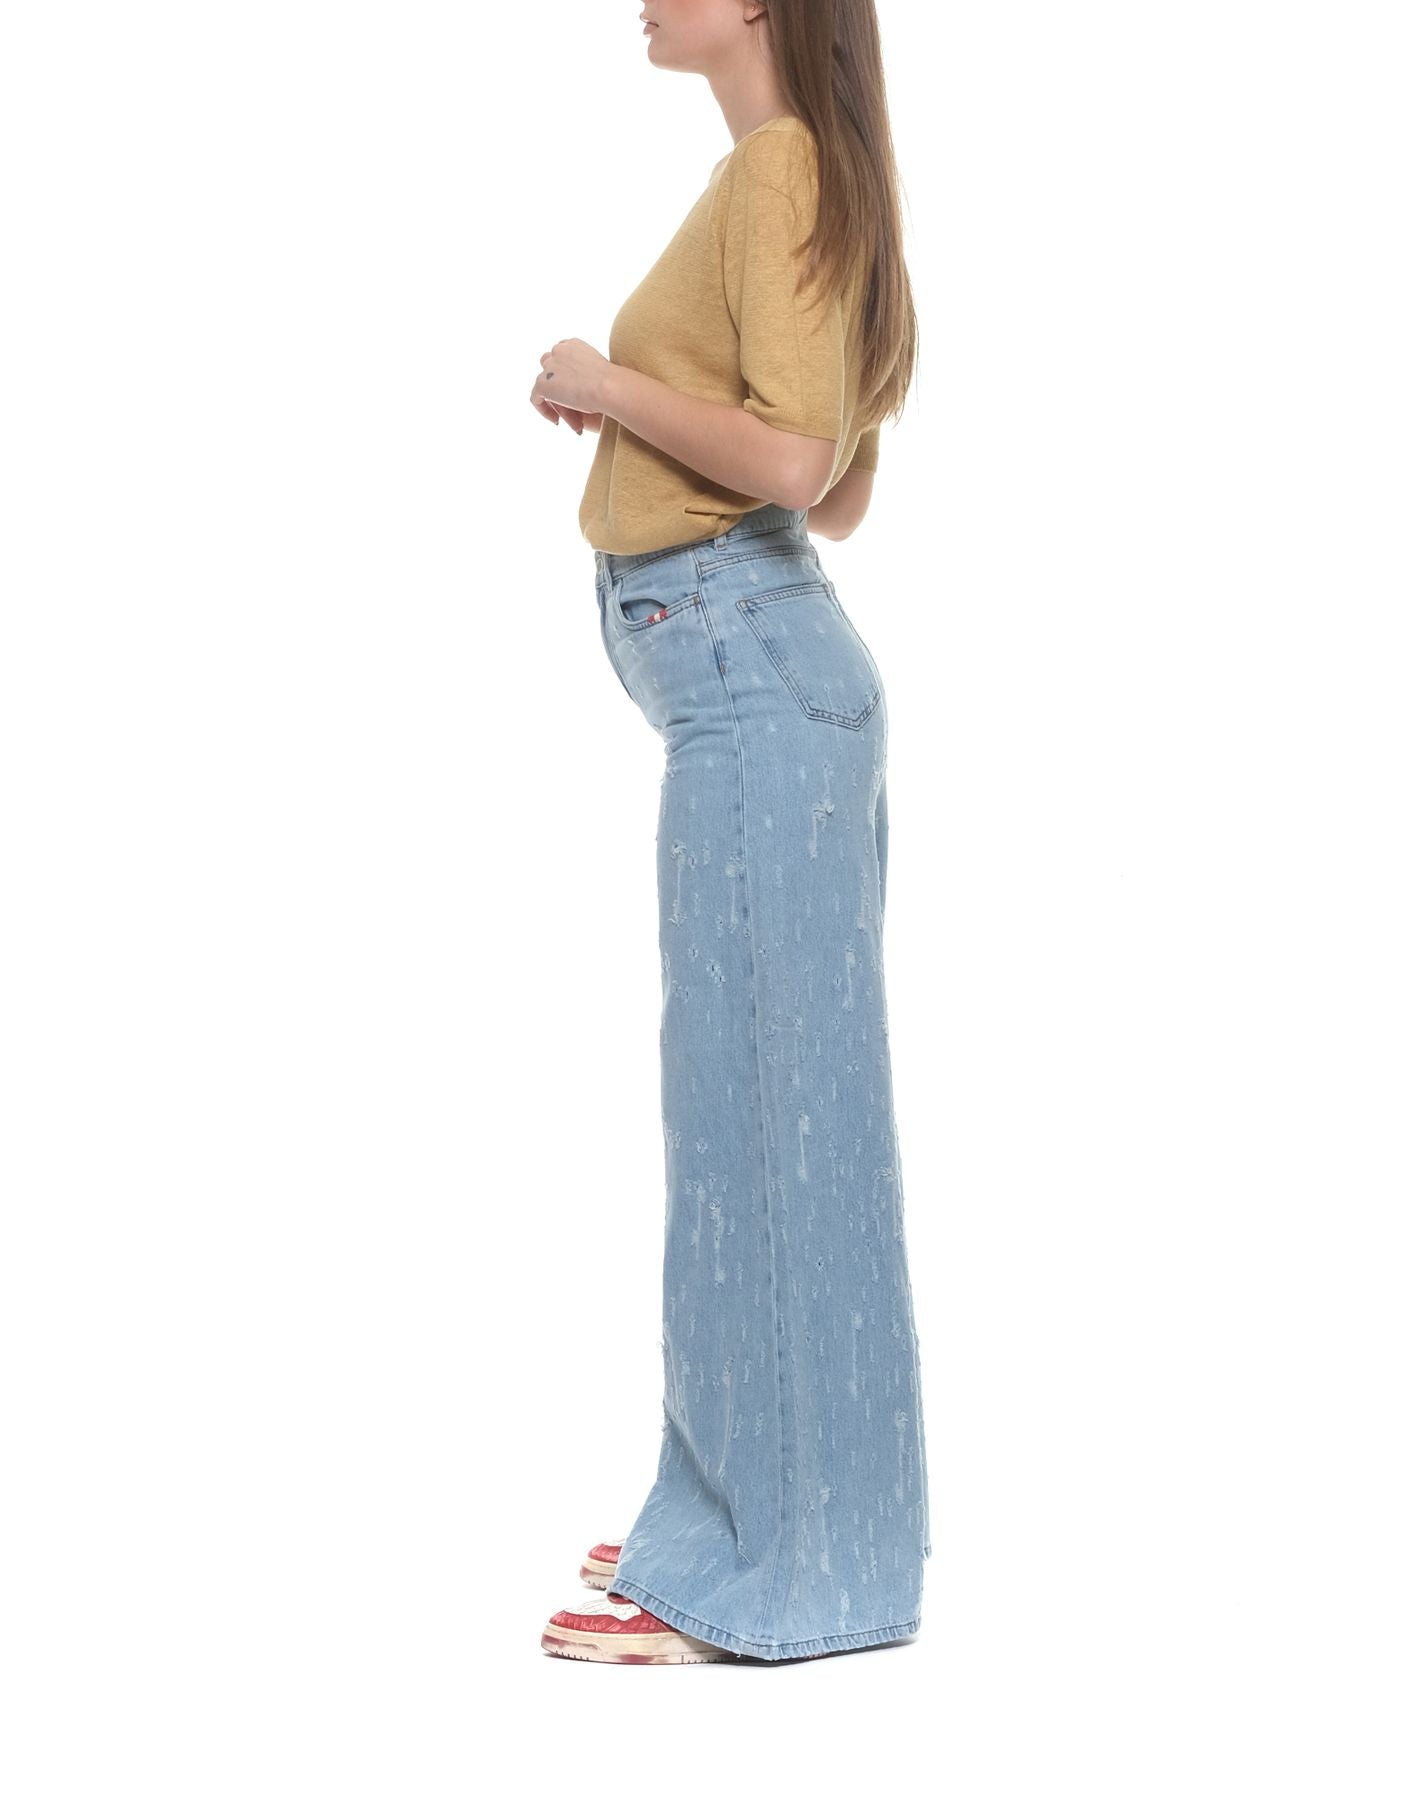 Jeans Woman AMD002D3802021 Descanse Amish